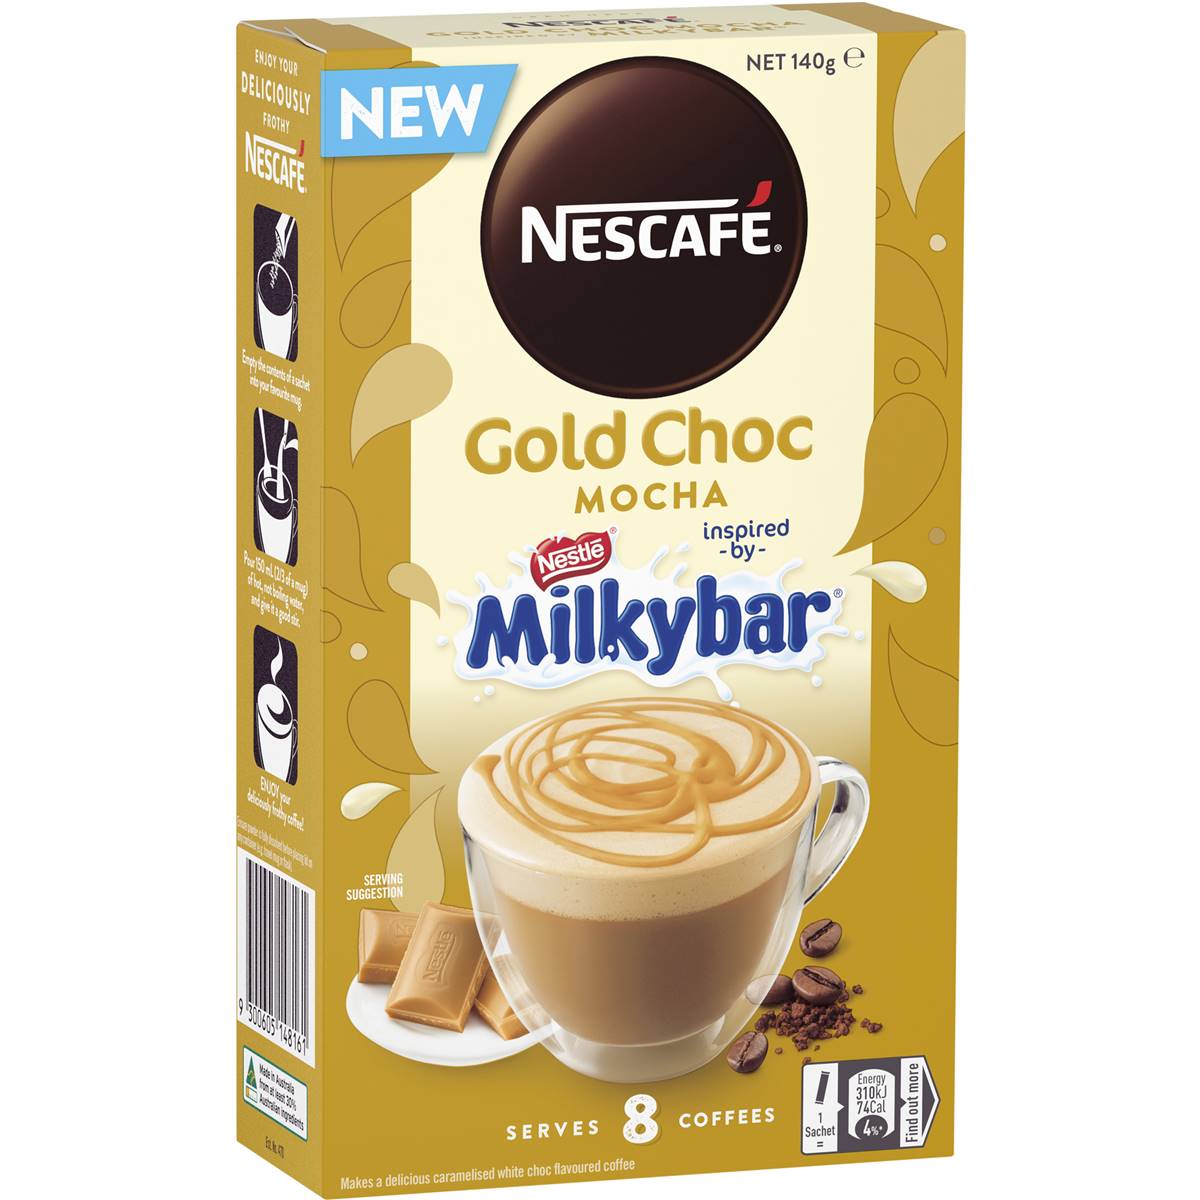 🇦🇺澳洲 Nescafe Milkybar 咖啡系列